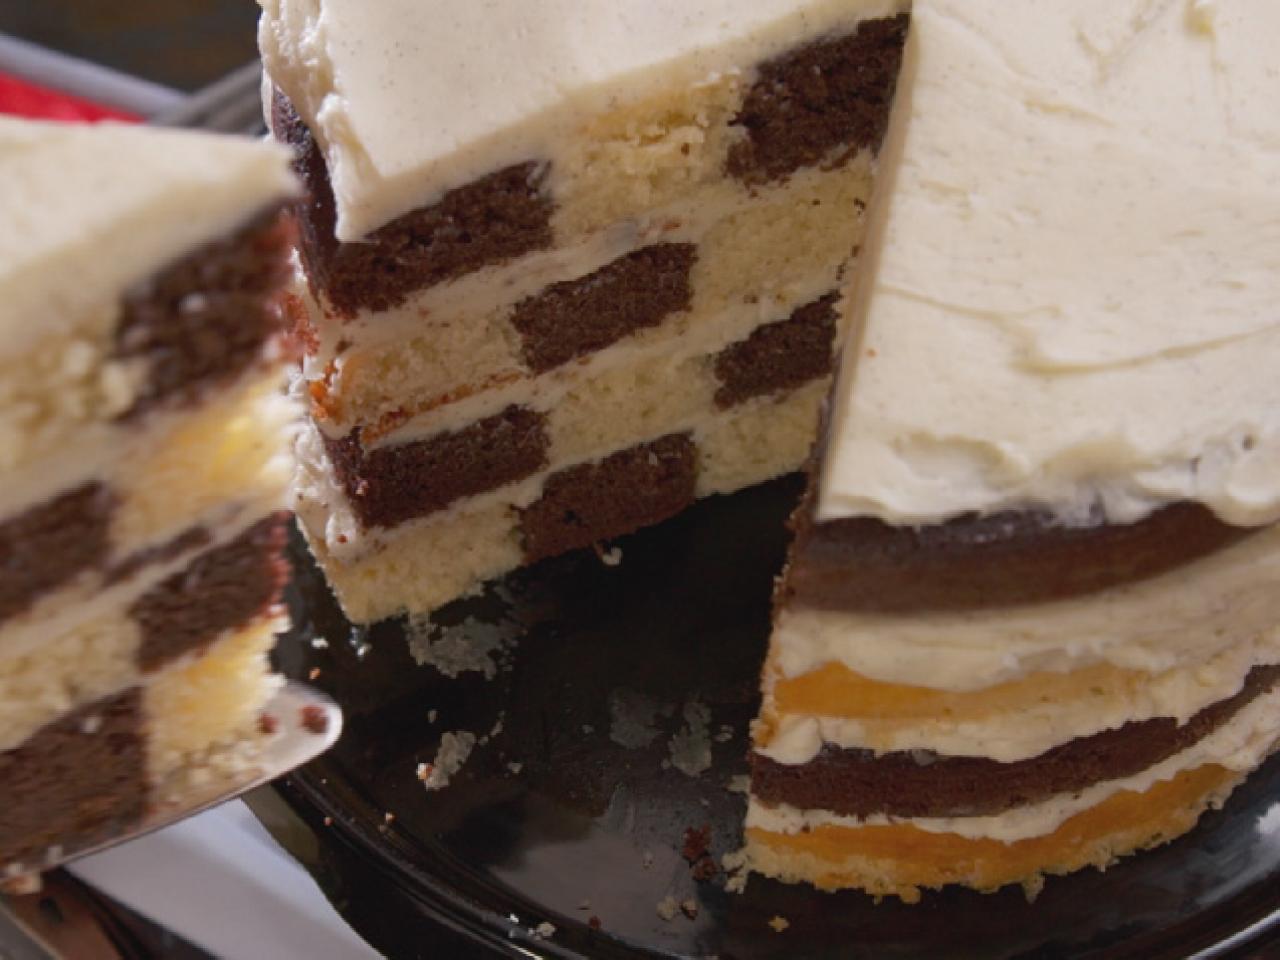 vanilla and chocolate birthday cake